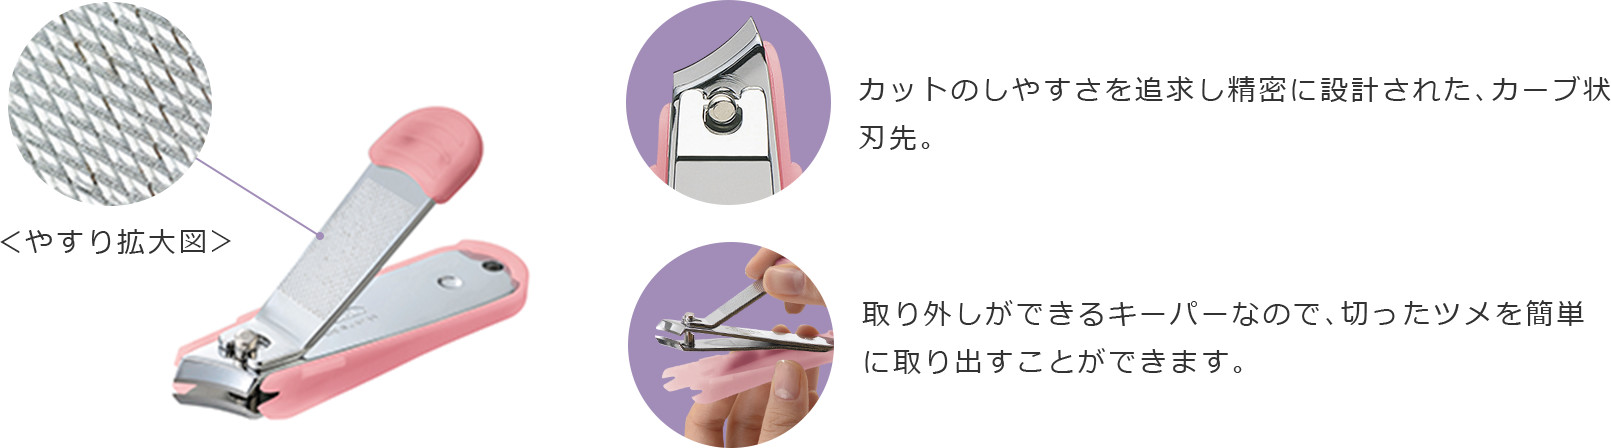 ビューティーグッズ「プリエ」 | 一般消費者用 | 日本が誇る信頼のブランド フェザー安全剃刀株式会社